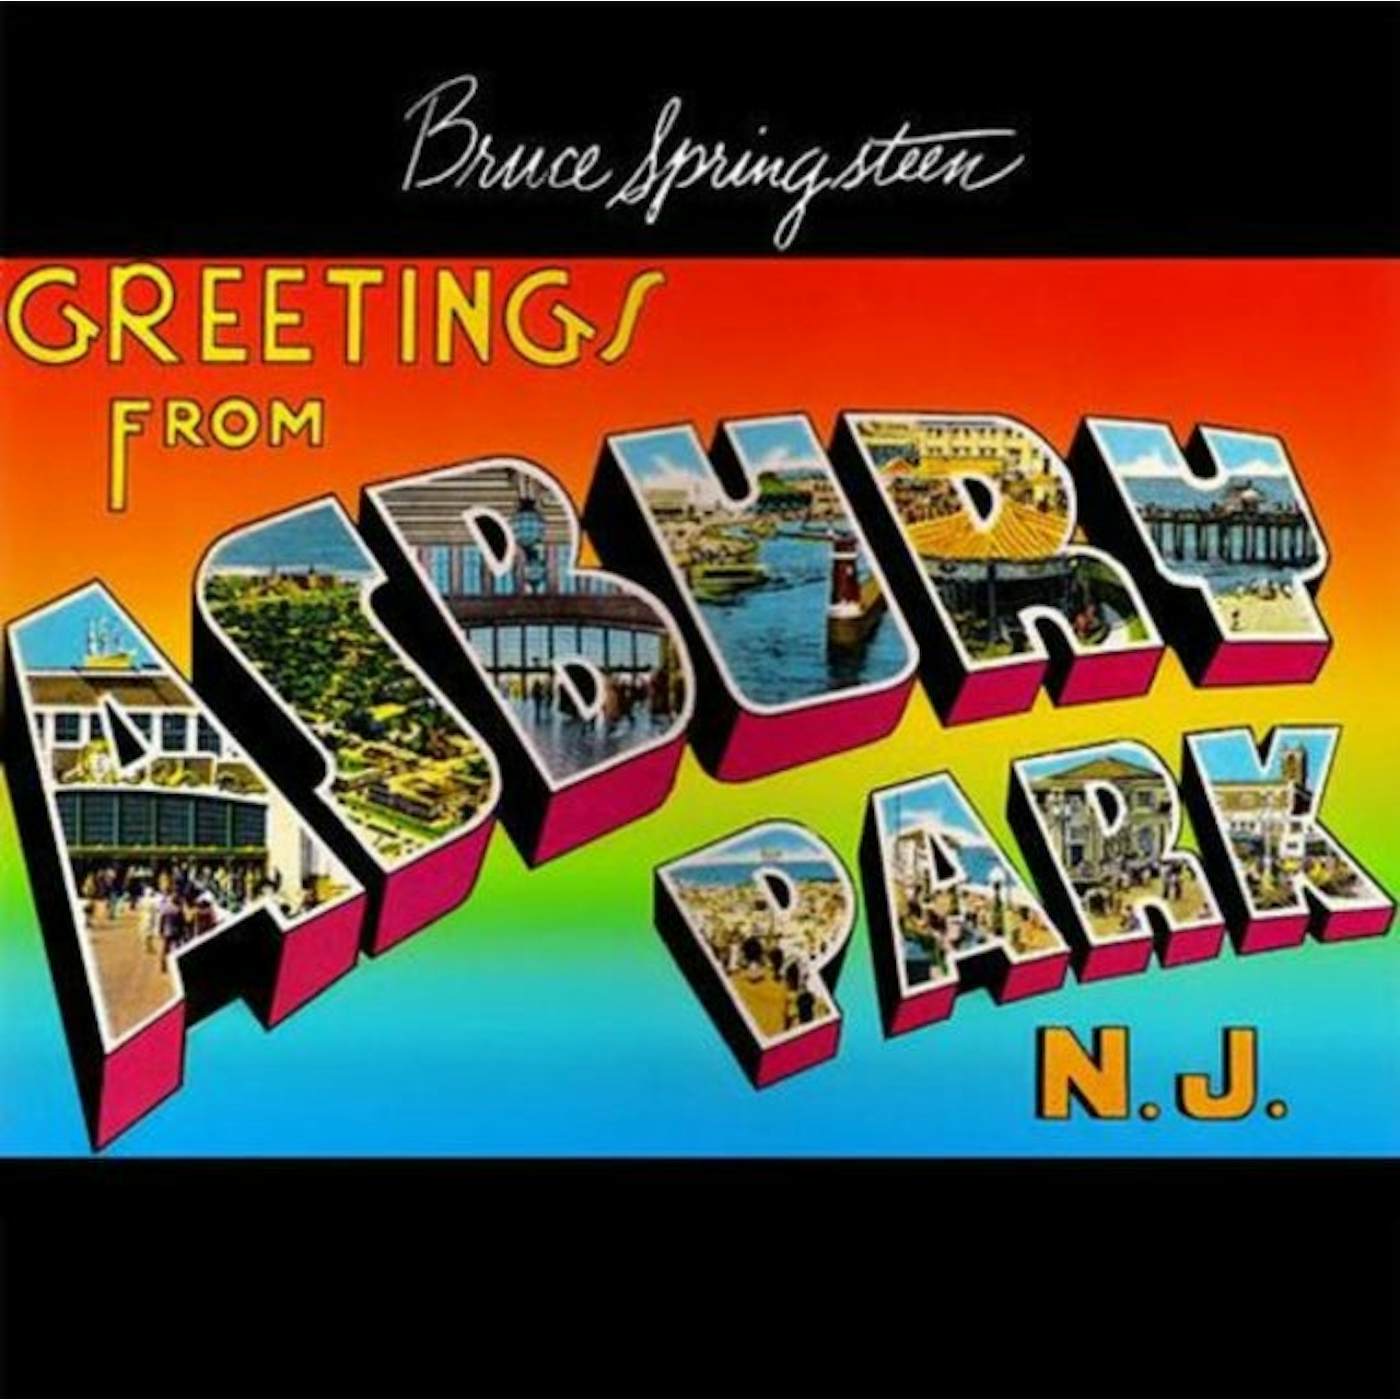 Bruce Springsteen LP Vinyl Record - Greetings From Asbury Park N J